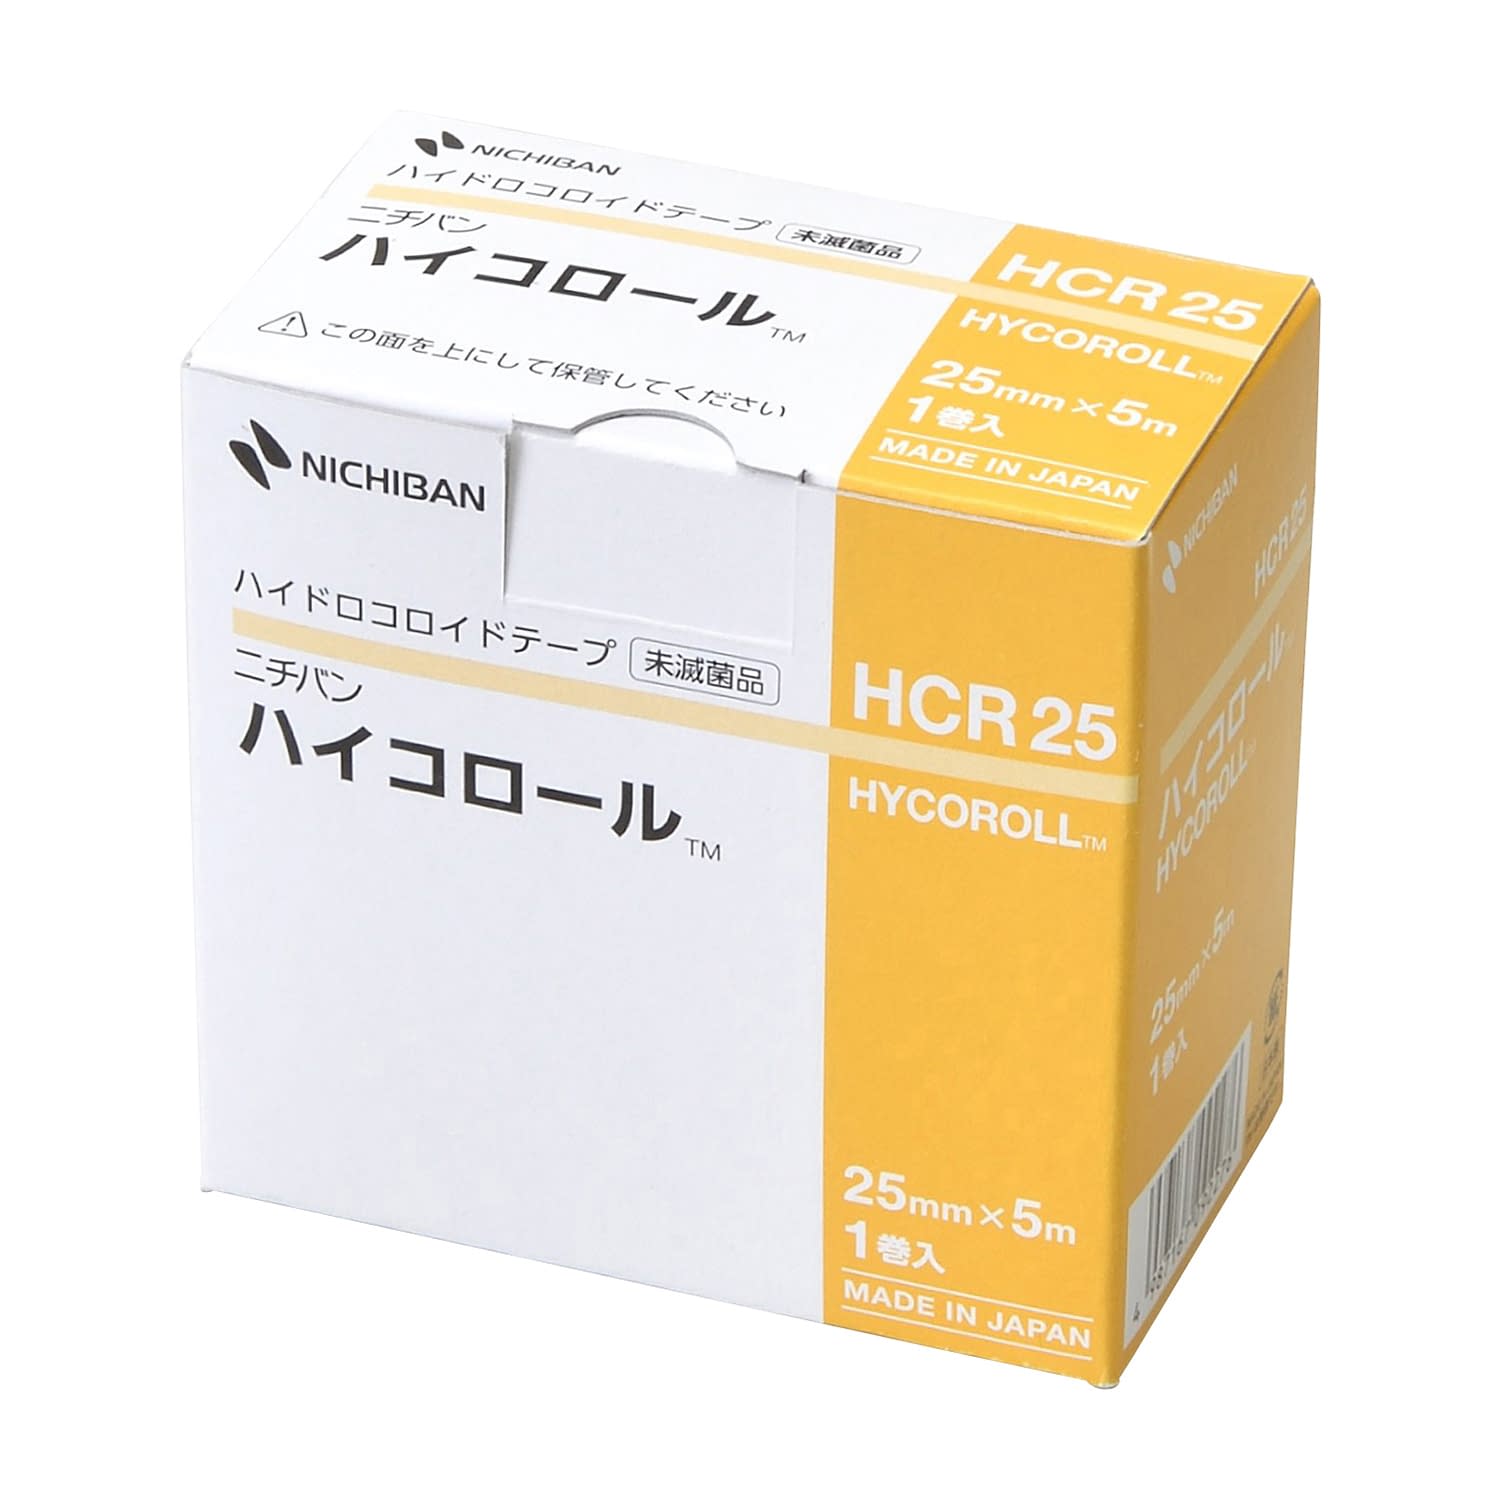 ハイドロコロイドテープ ハイコロールHCR25(25MMX5M)HCR25(25MMX5M)(24-8585-00)【ニチバン】(販売単位:1)